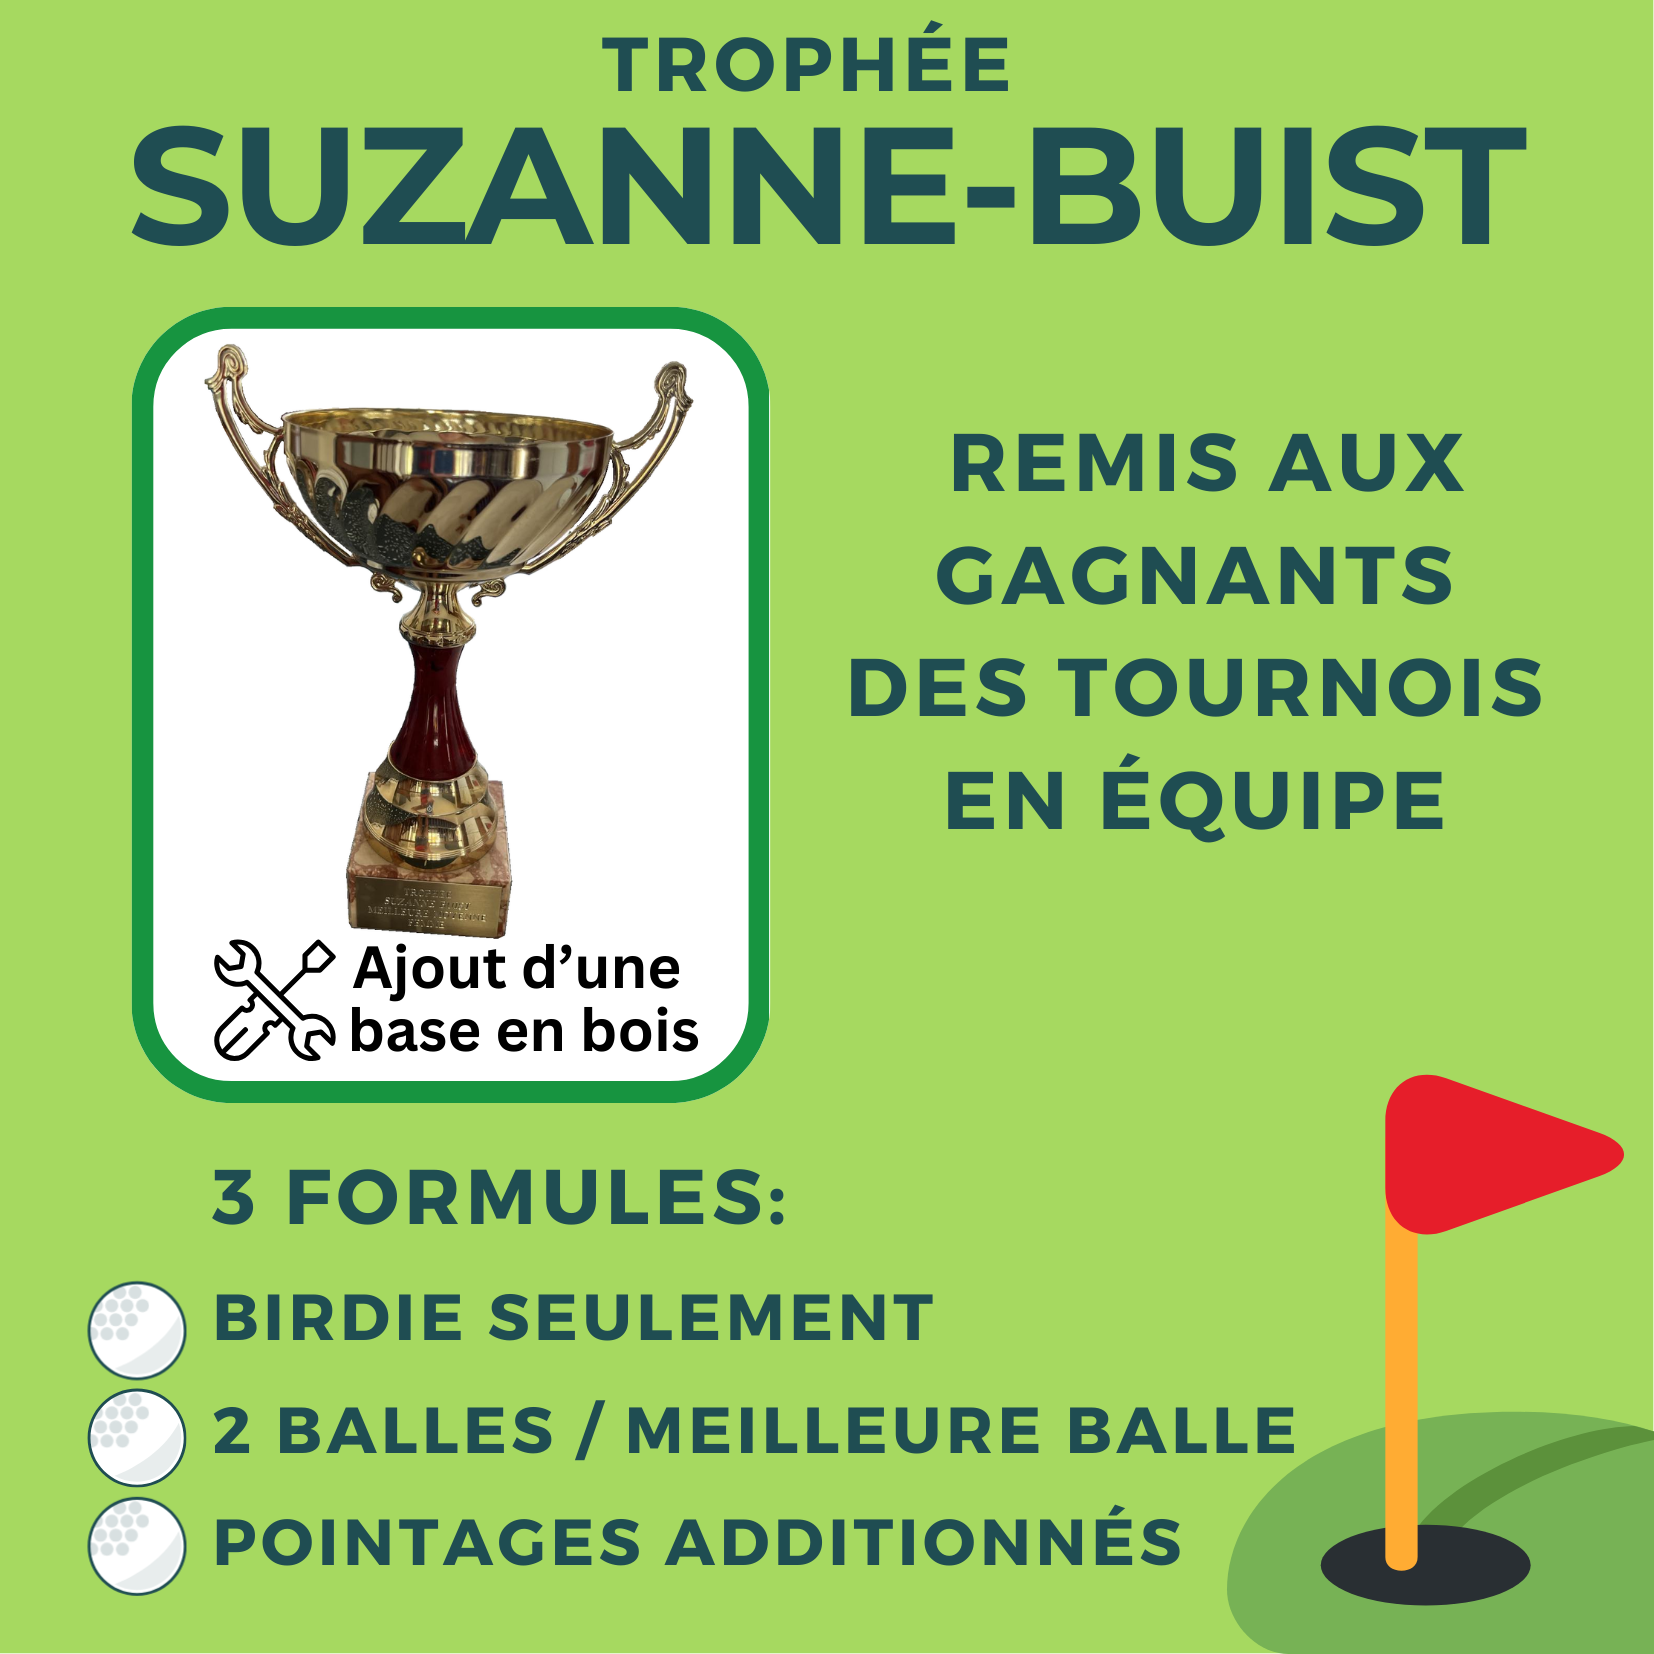 Annonce du nouveau trophée portant le nom de Suzanne Buist